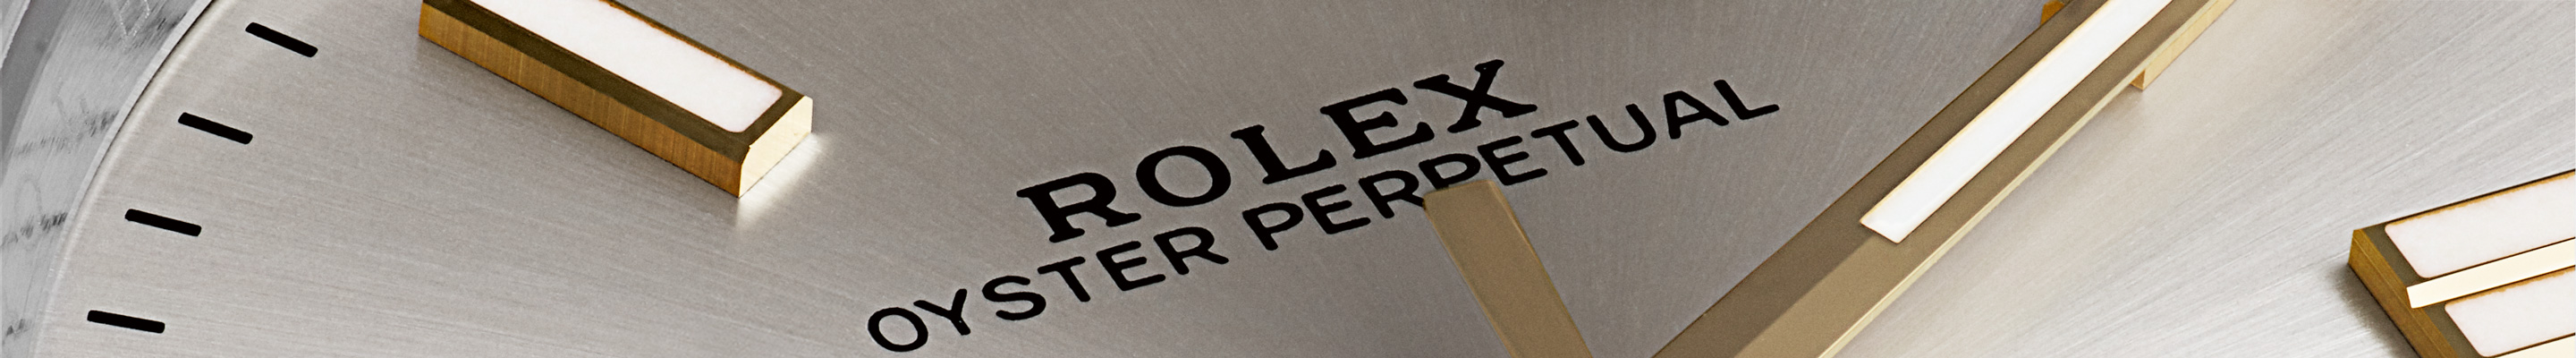 Rolex Oyster Perpetual, la quintaesencia del Oyster